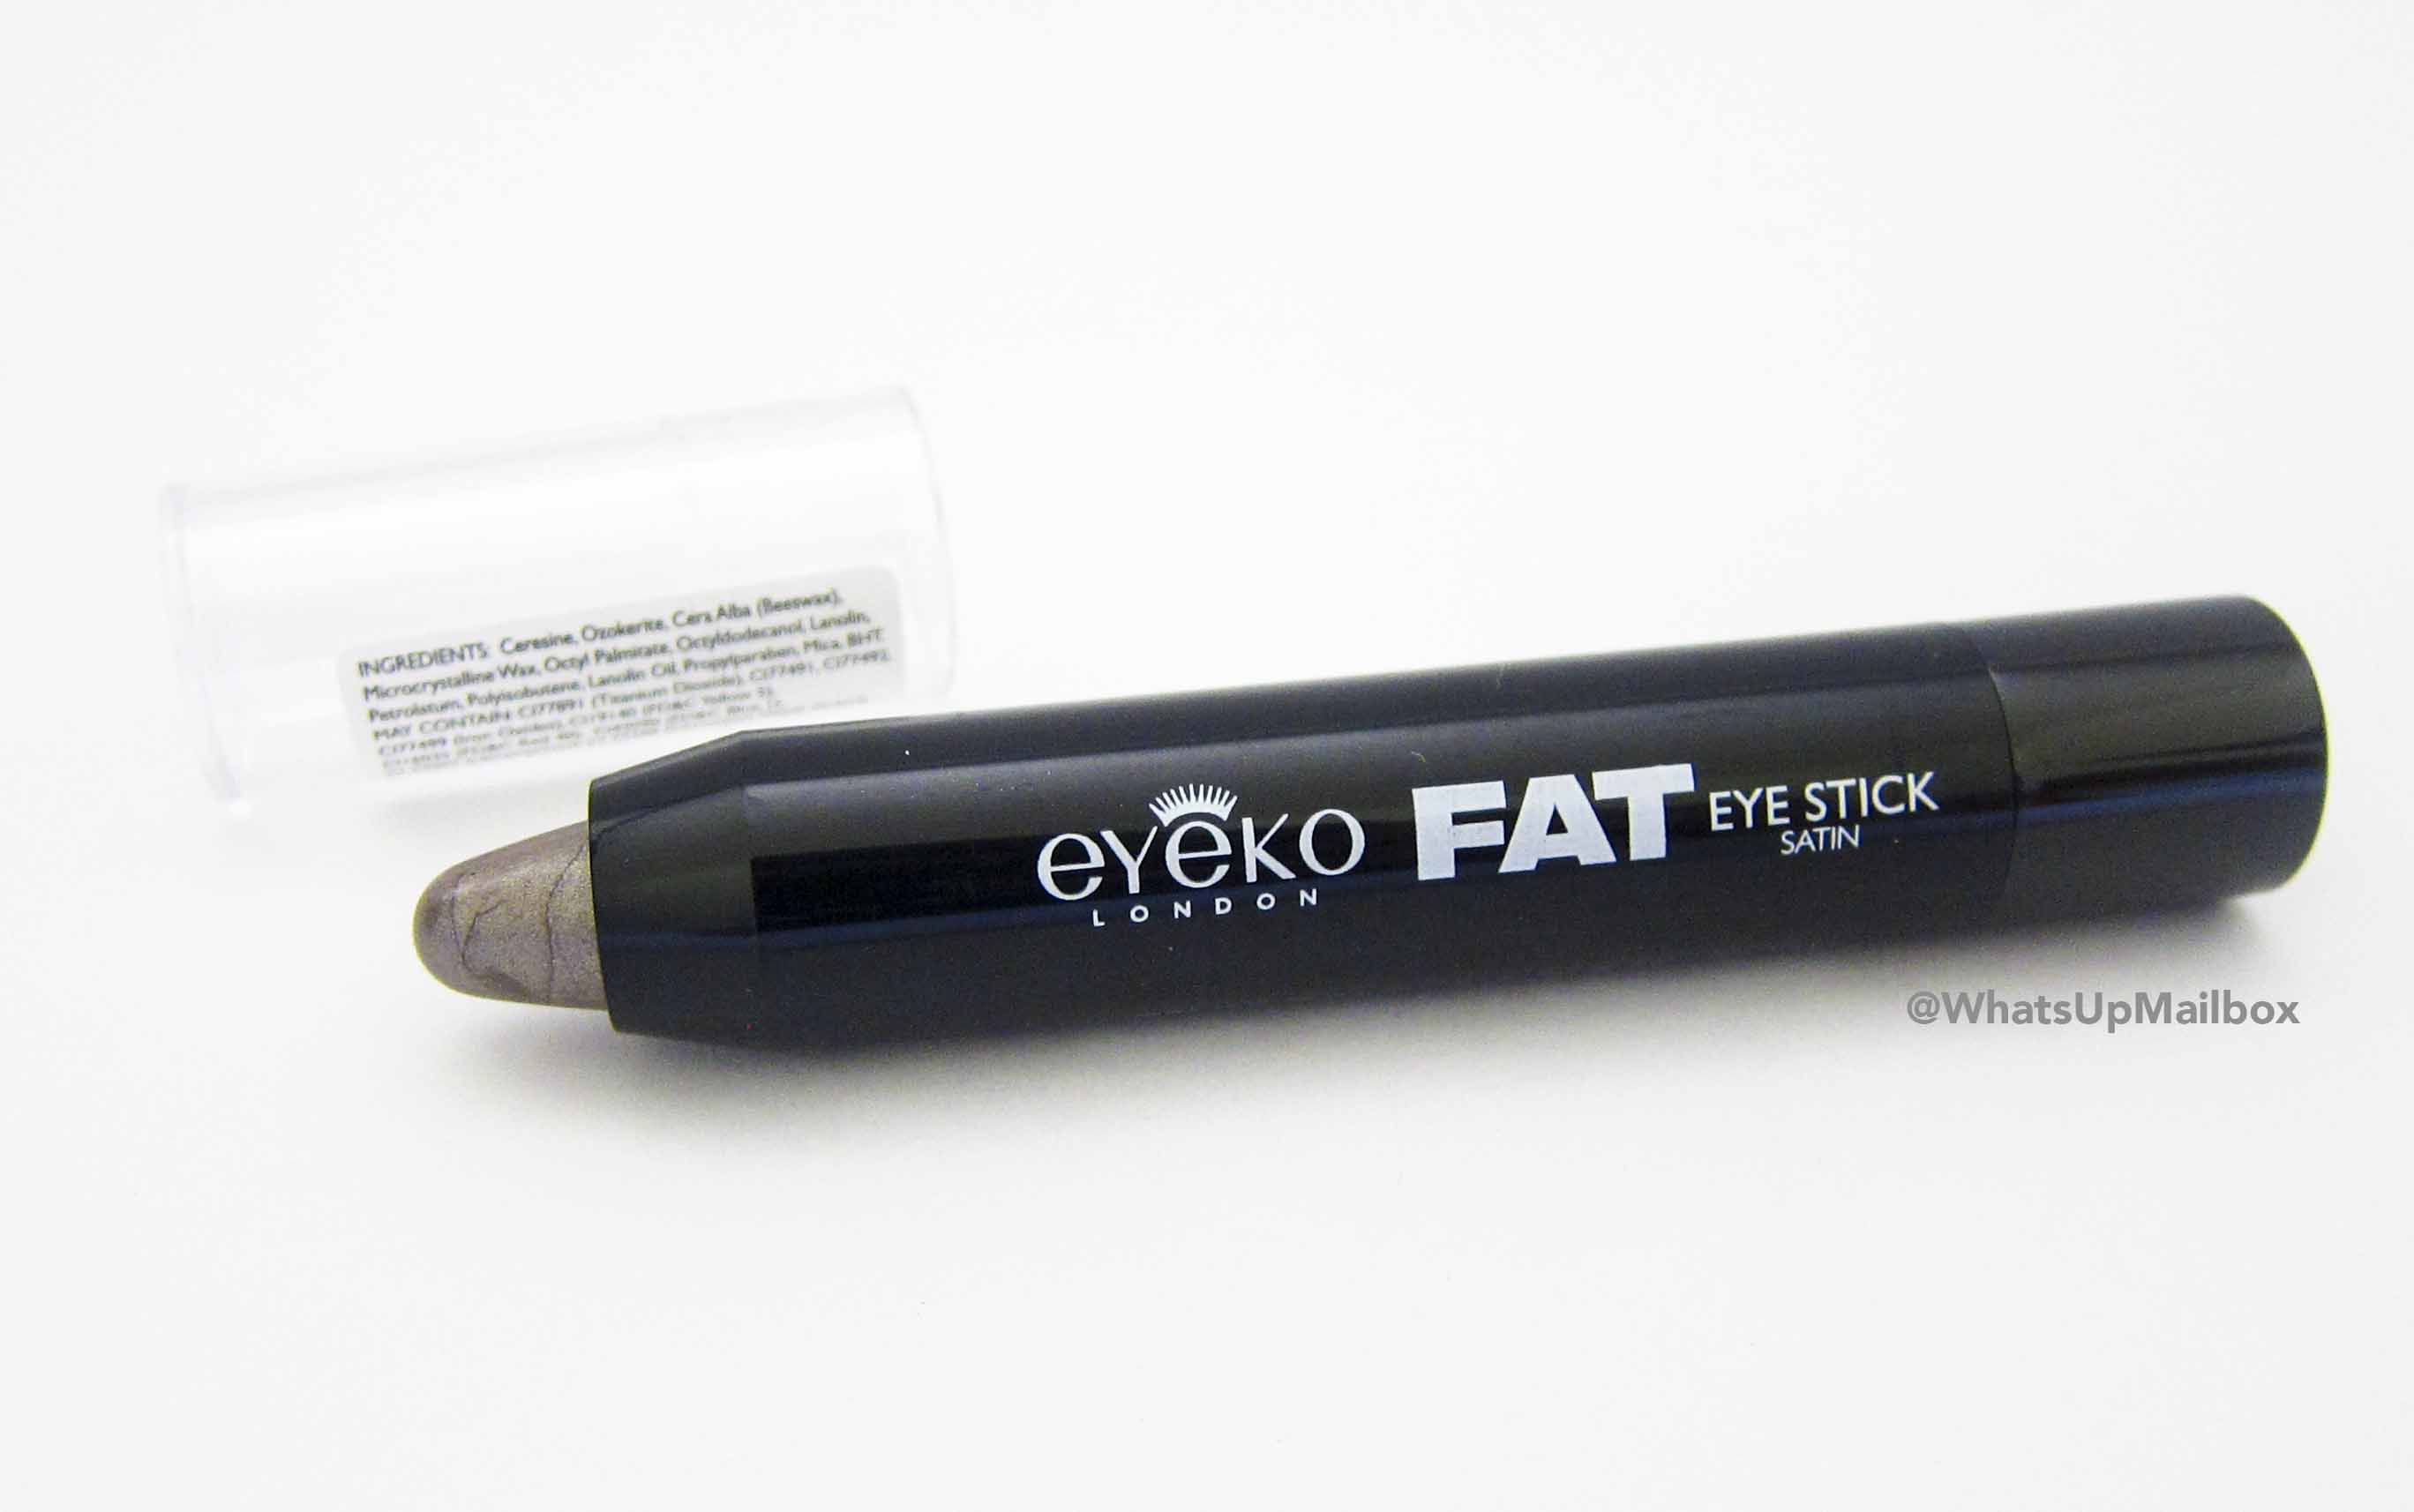 Eyeko Fat Eye Stick